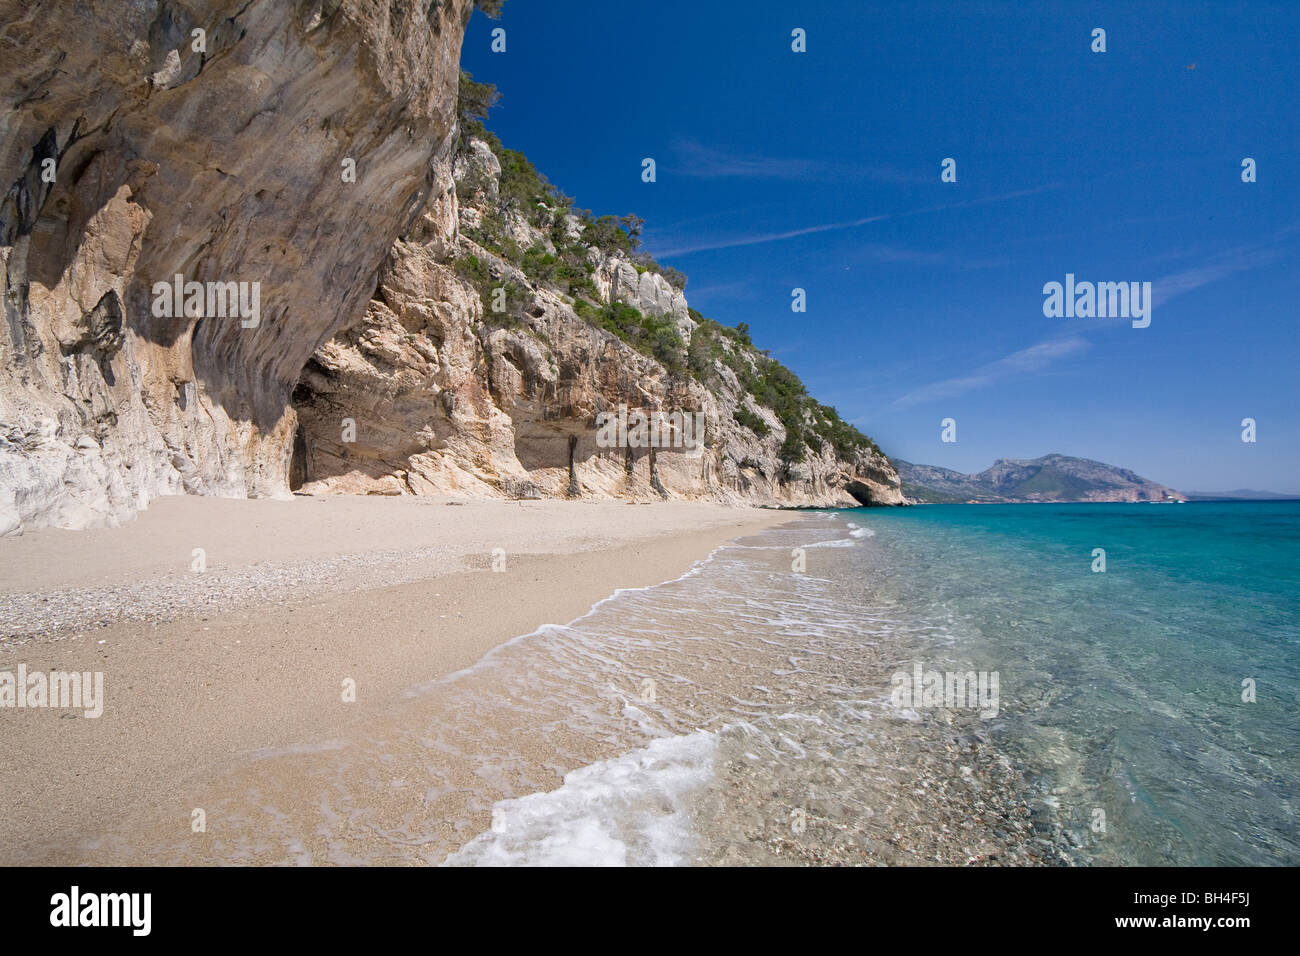 Plage Cala Luna vide, Sardaigne, île de l'Italie. Eau bleu clair dans la baie de Cala Luna, Mer Méditerranée. Banque D'Images